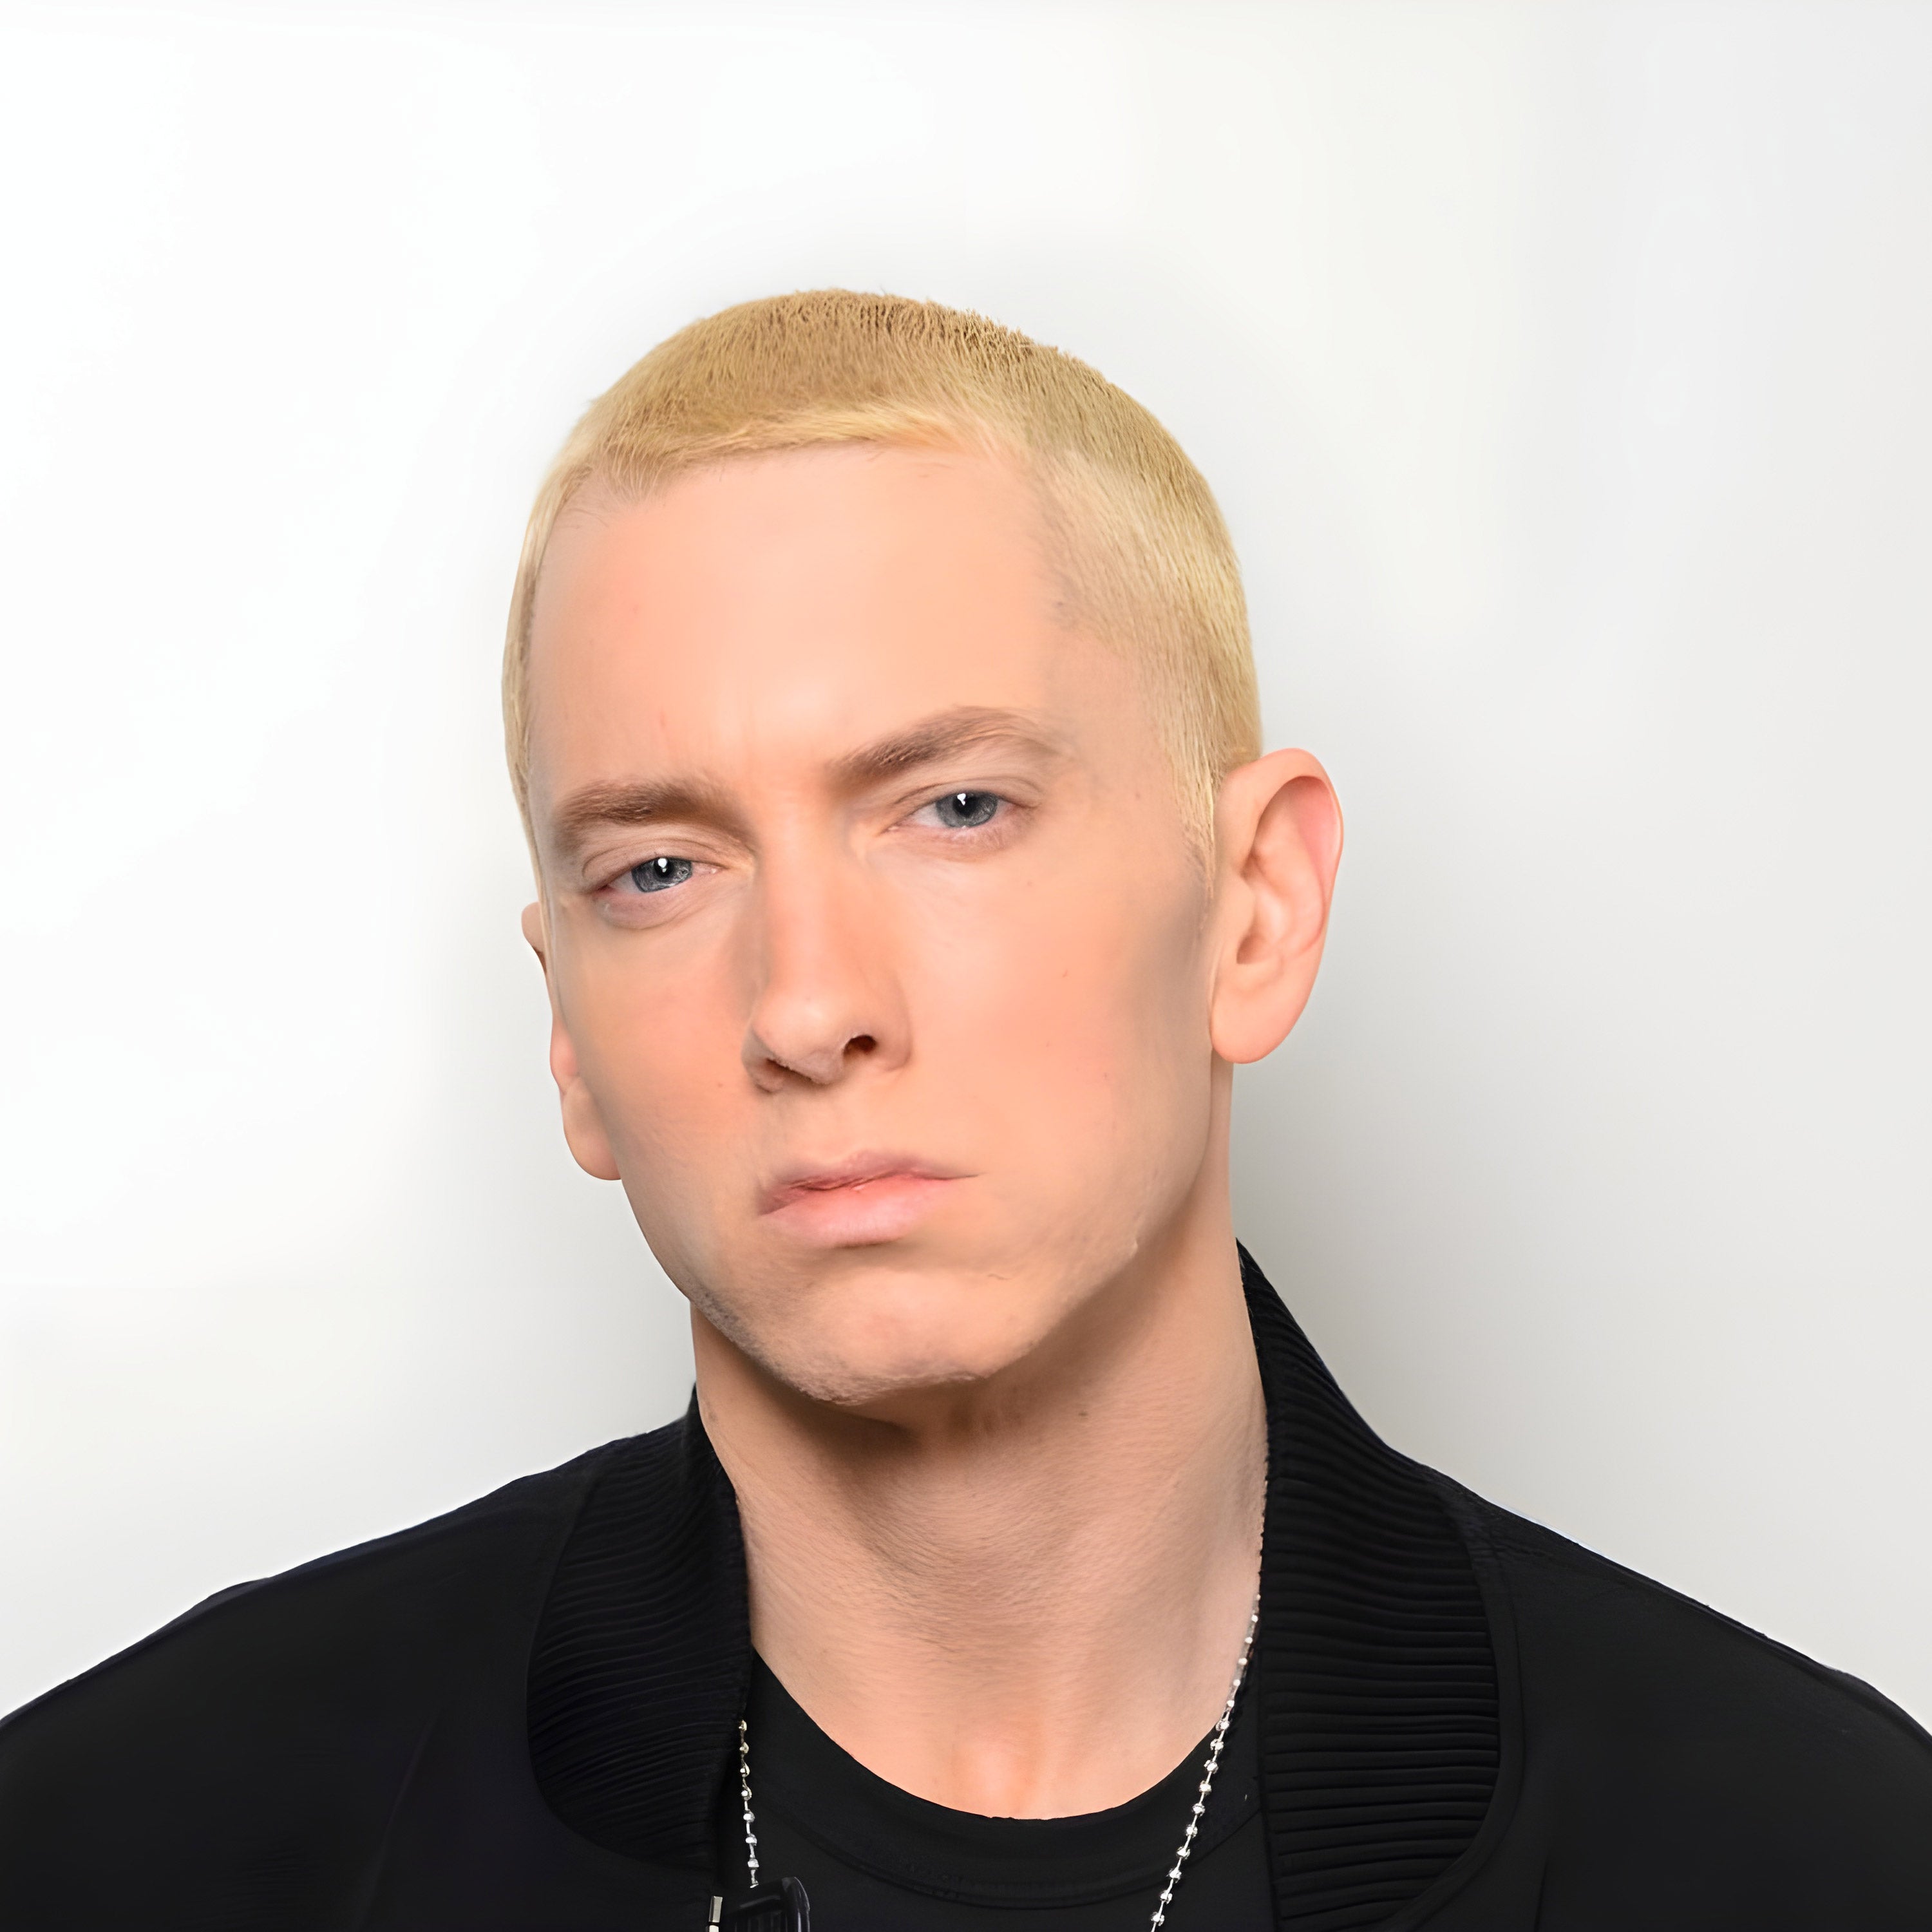 10 curiosità su Eminem: dal rap alle collabo